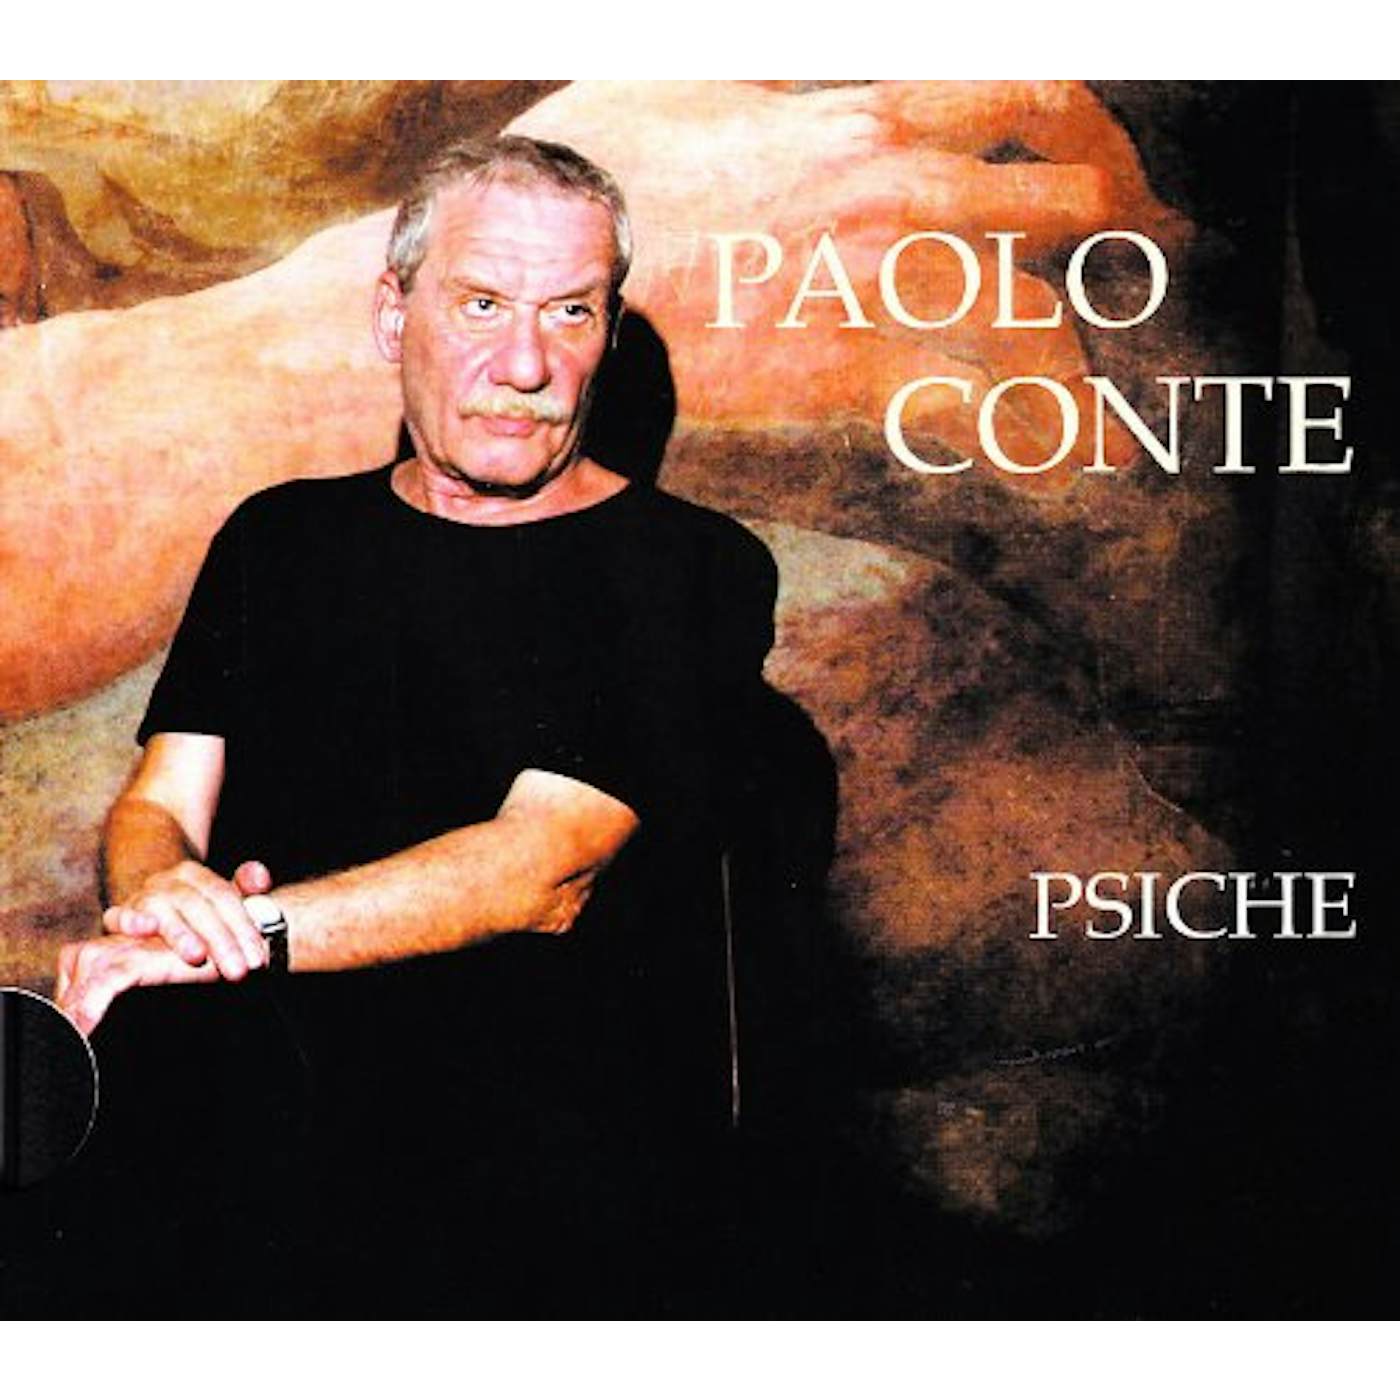 Paolo Conte PSICHE CD